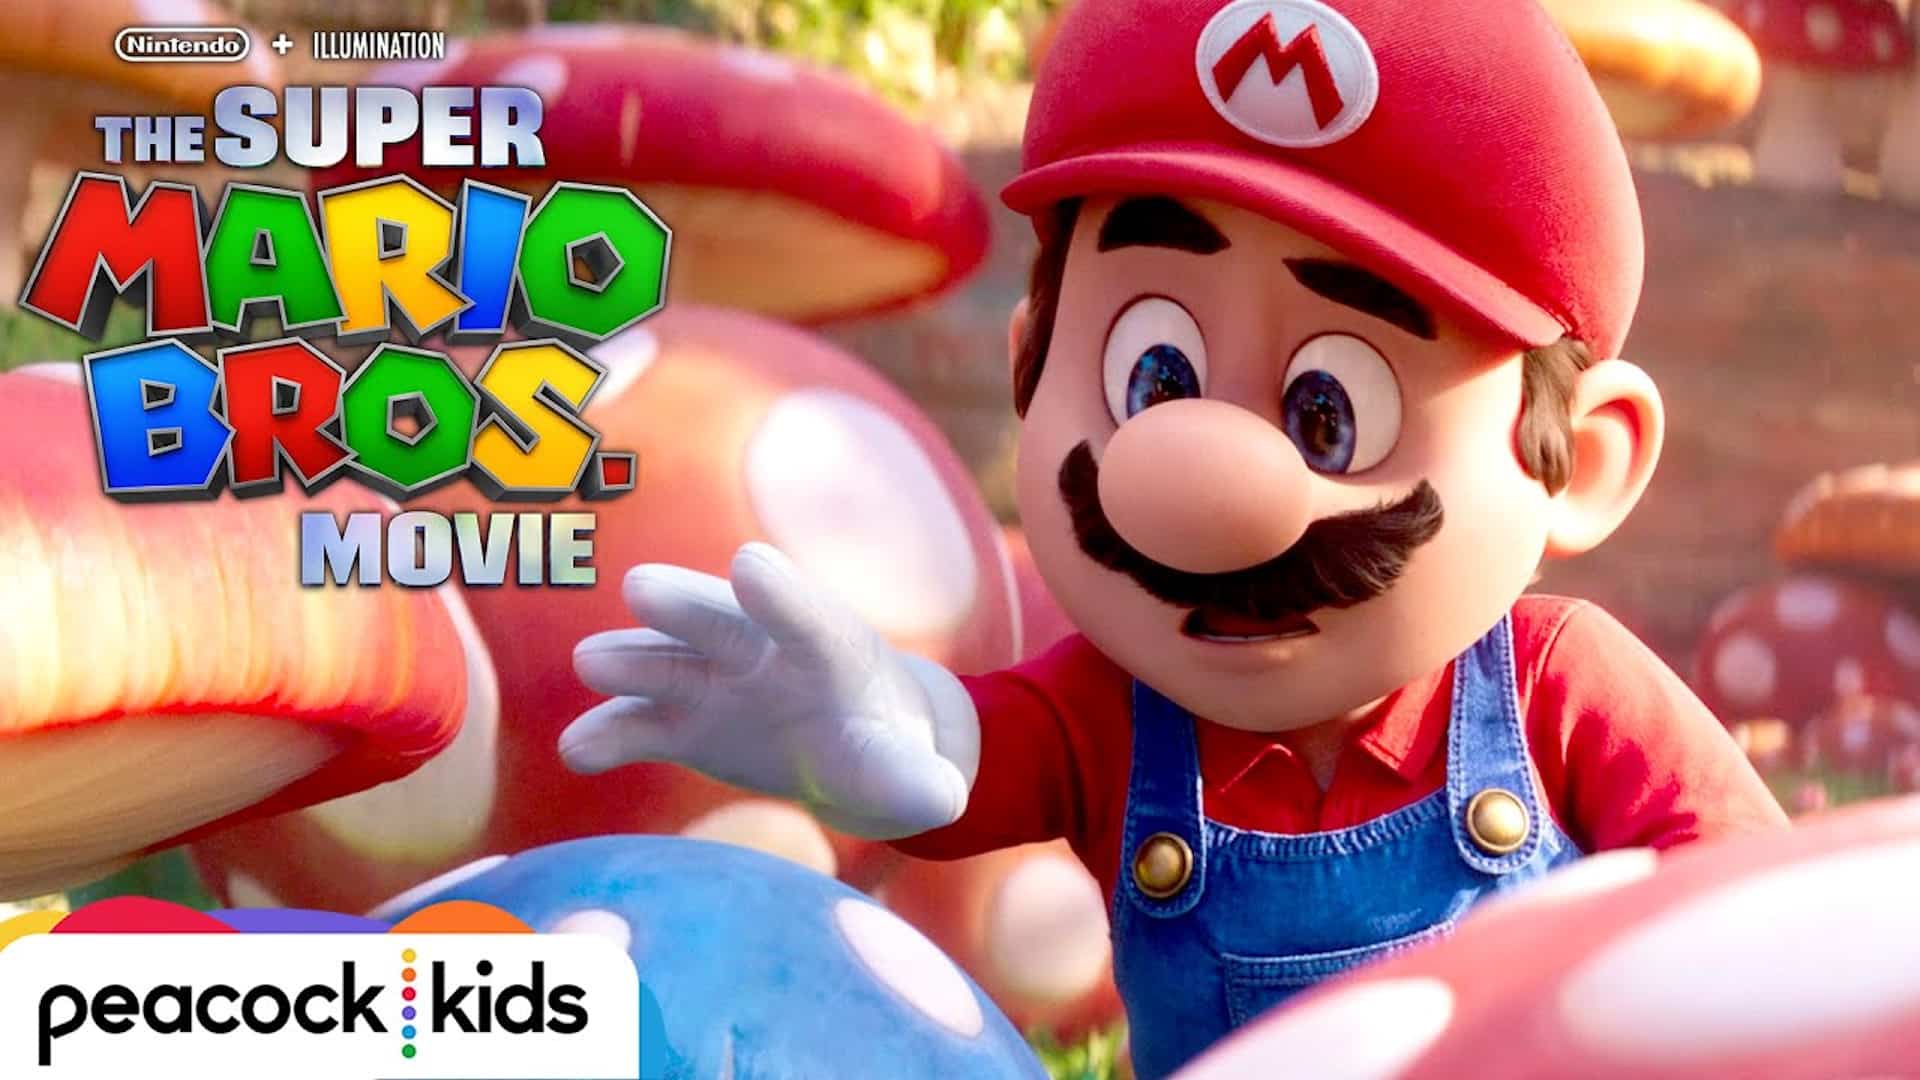 Where & When To Stream The Super Mario Bros. Movie